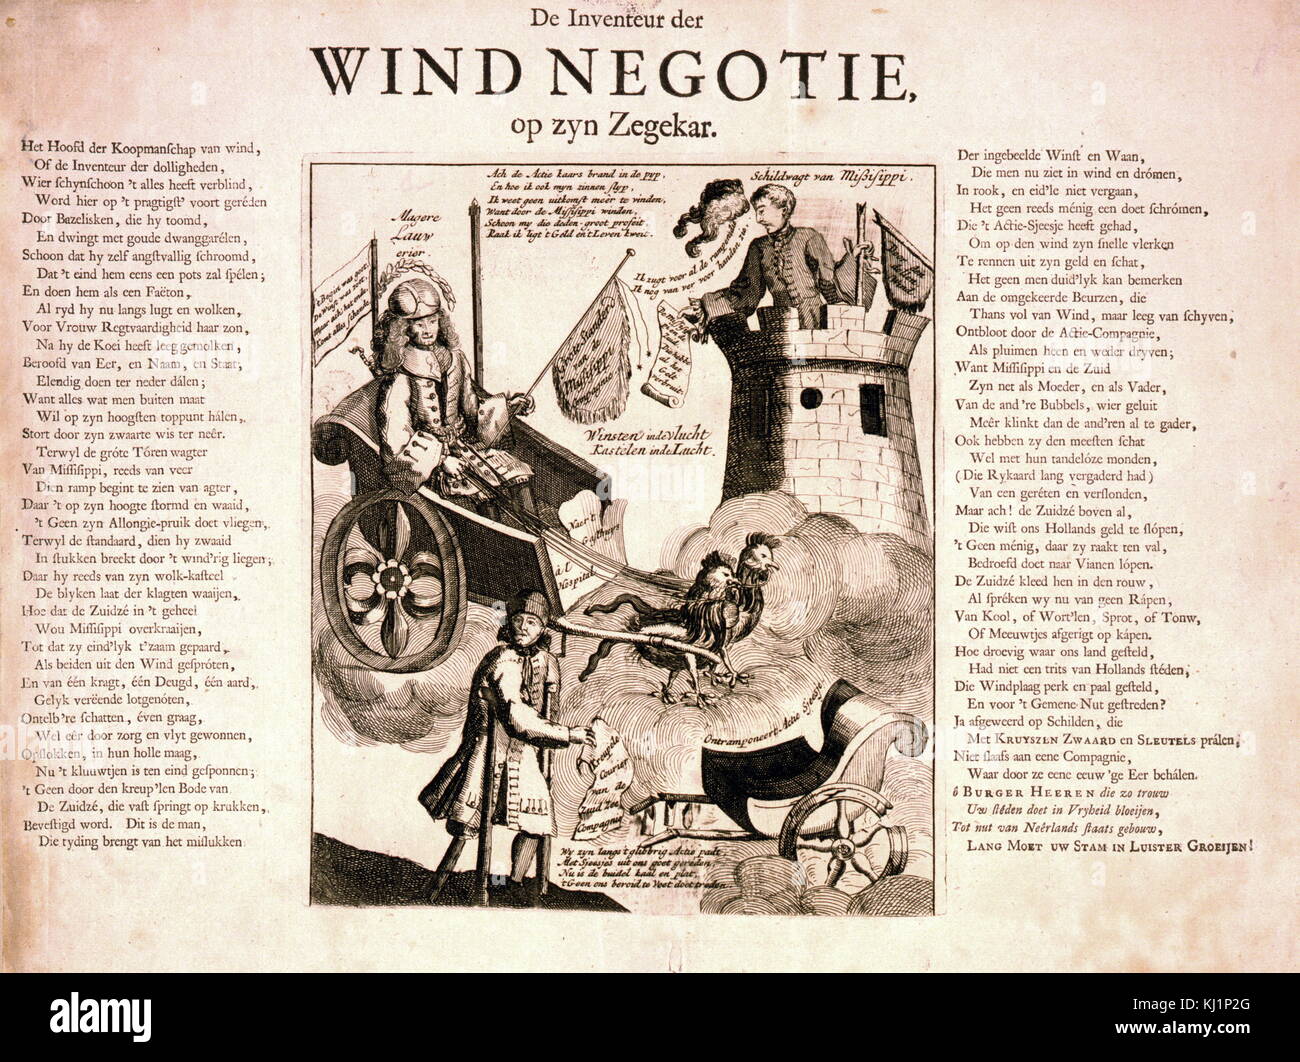 De inventeur der windnegotie, op zyn zegeka, 1720. graviert Satire auf den Mississippi und andere finanzielle Blasen von 1720; aus einer Sammlung niederländischer Satiren auf diese Systeme Stockfoto